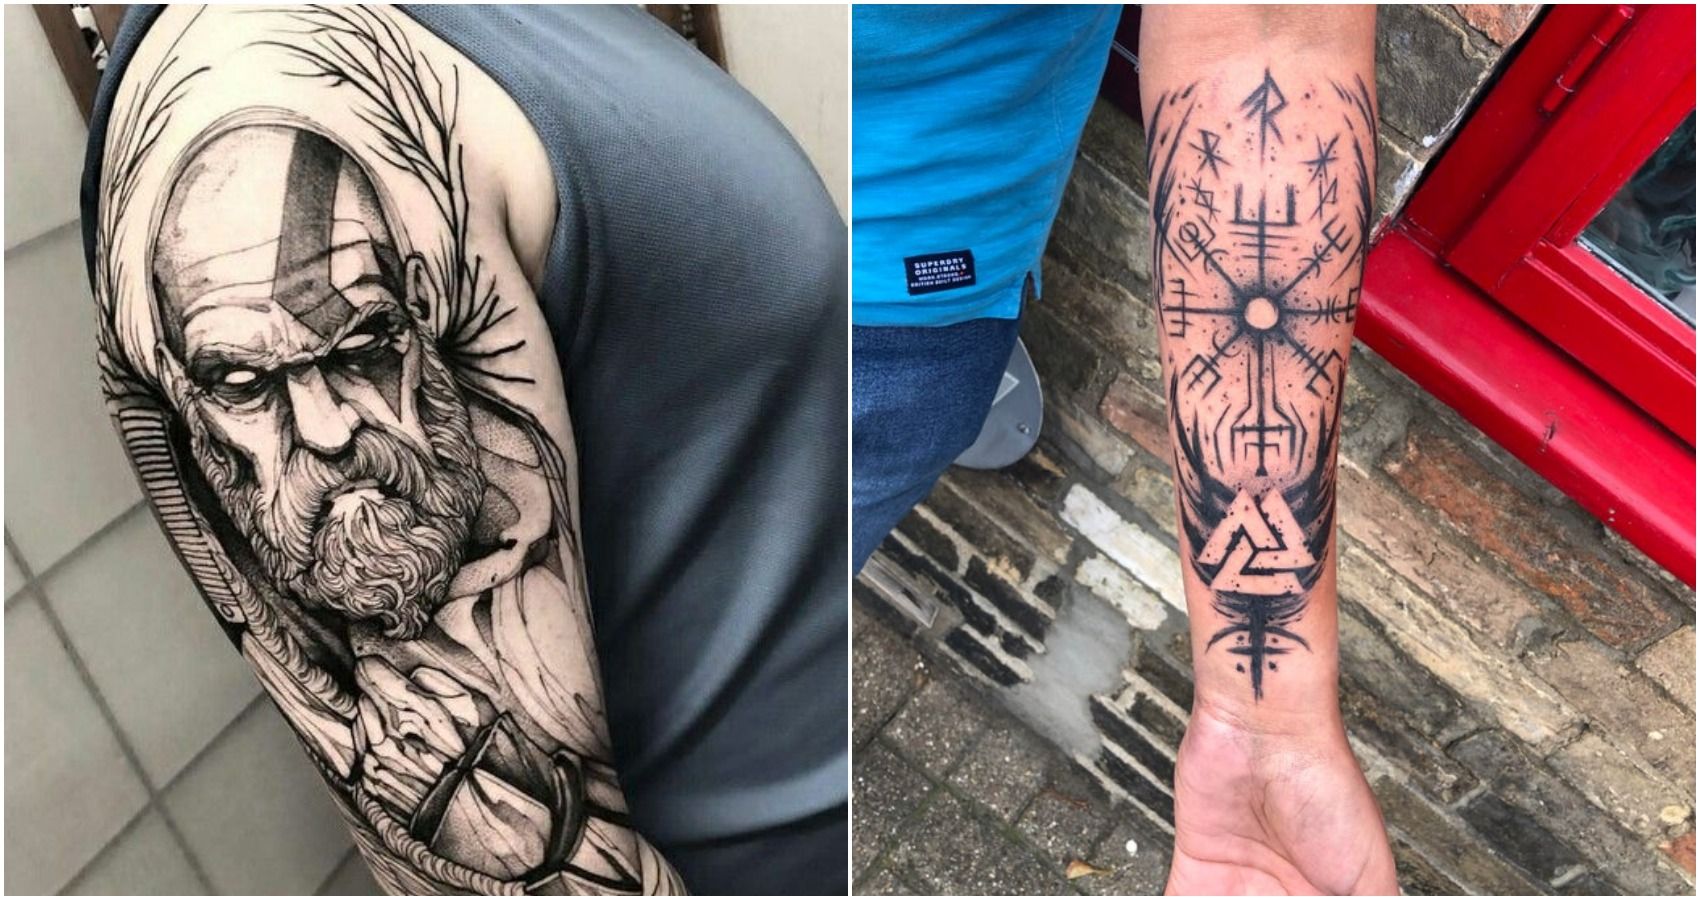 2. God of War arm tattoo - wide 2